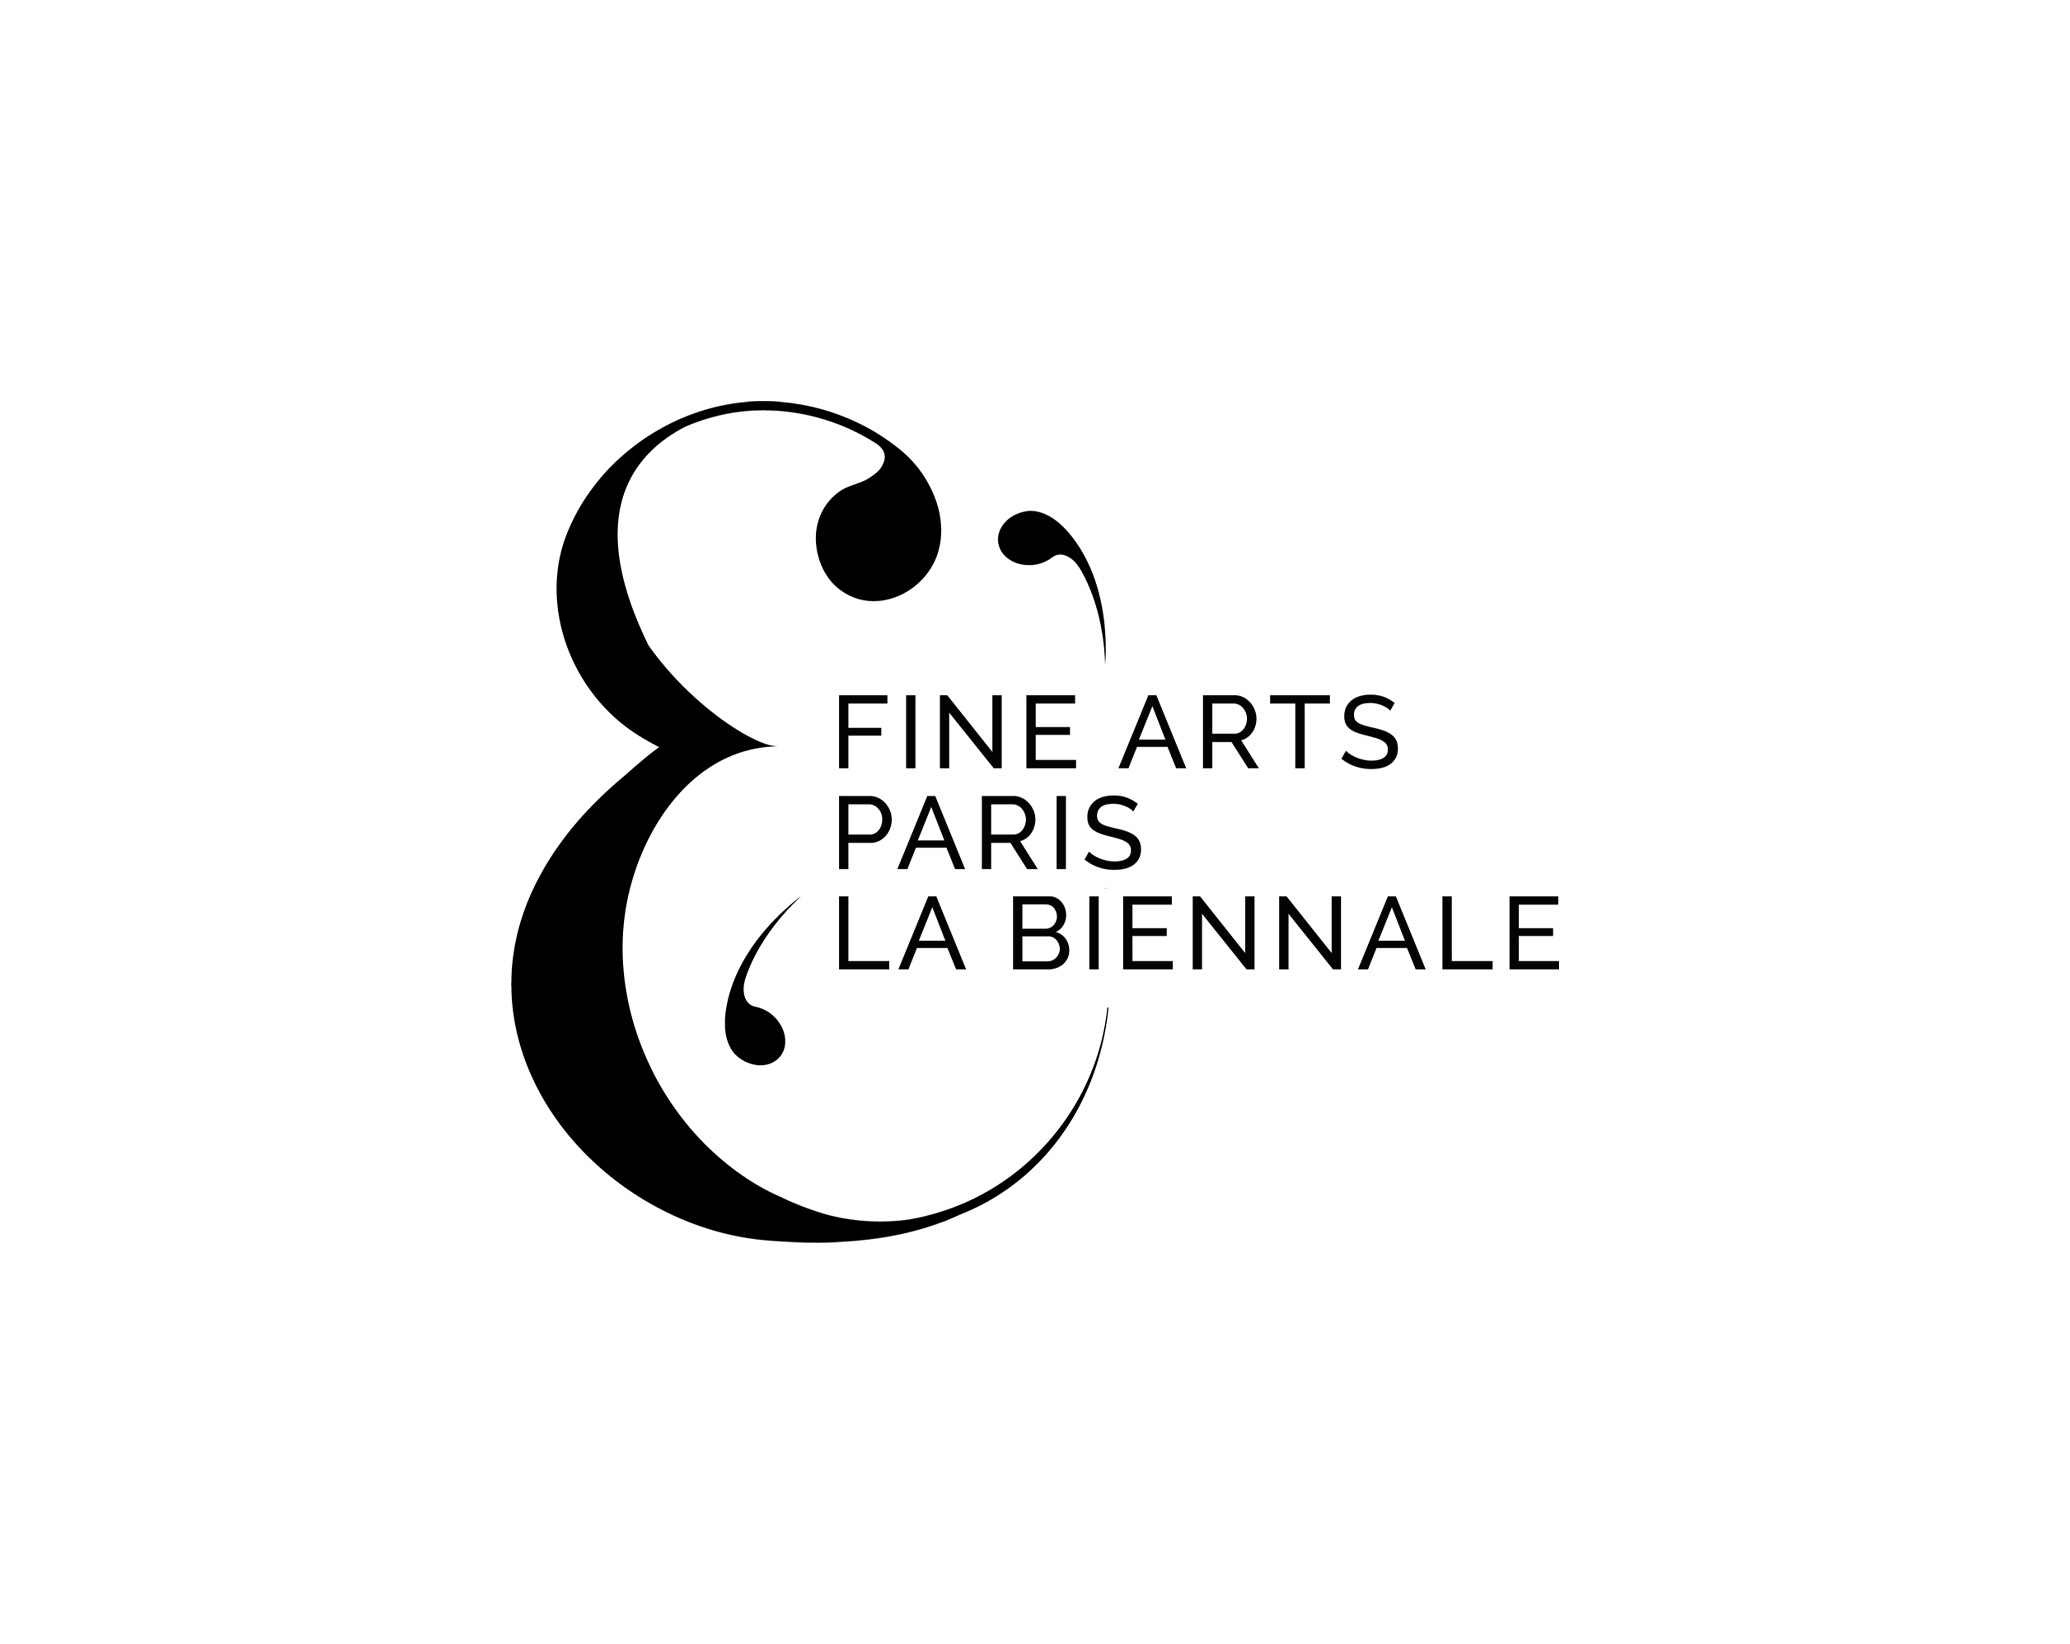 Fine Arts Paris La biennale